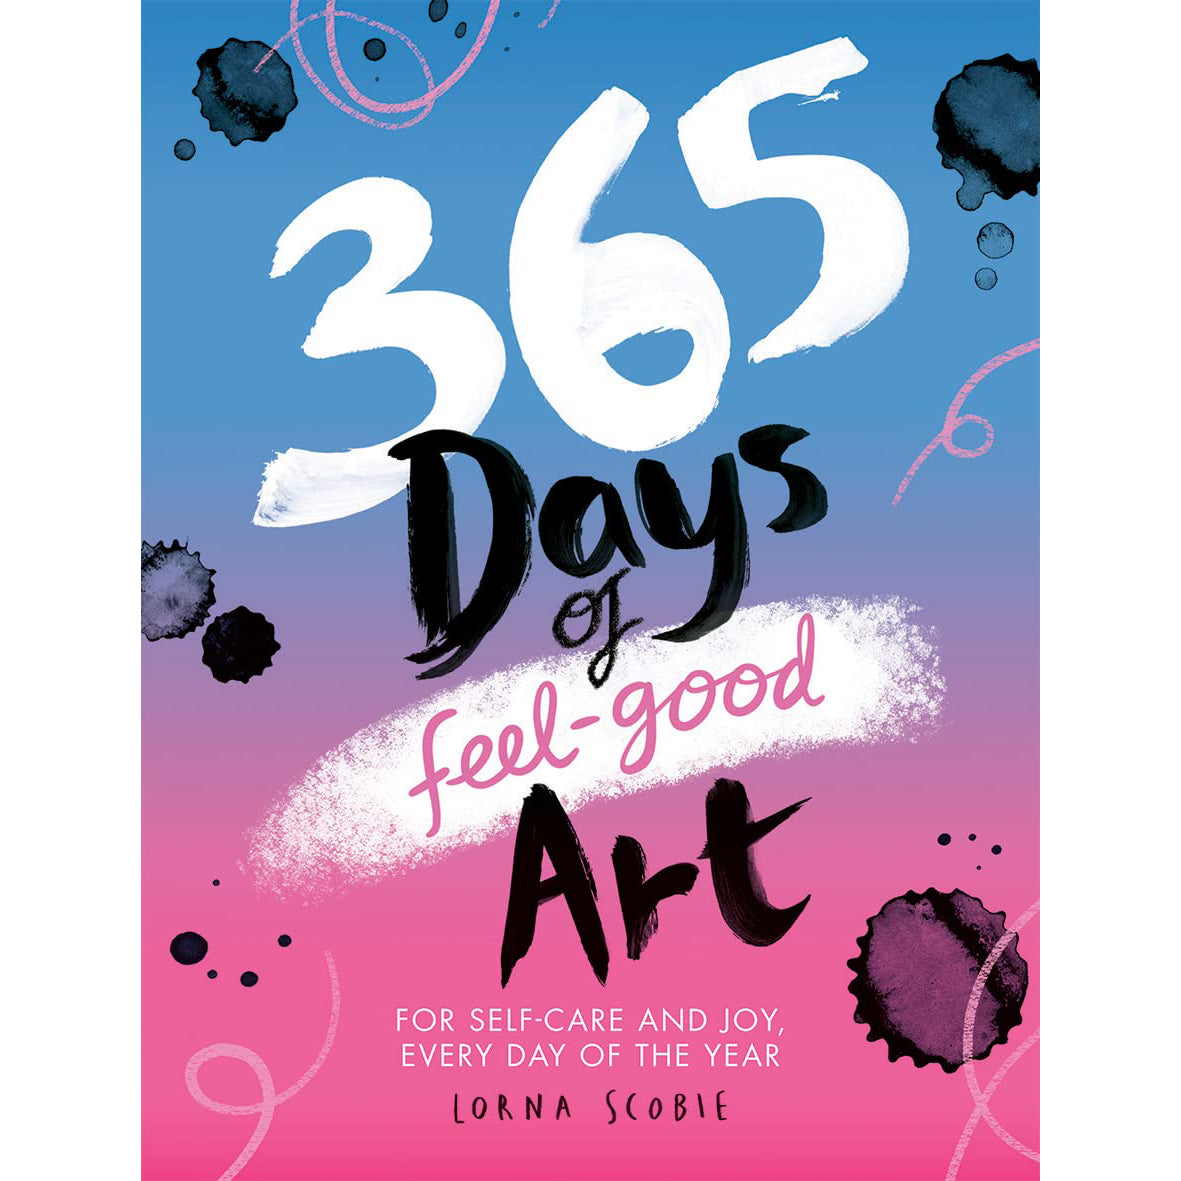 365 Days of Feel-Good Art